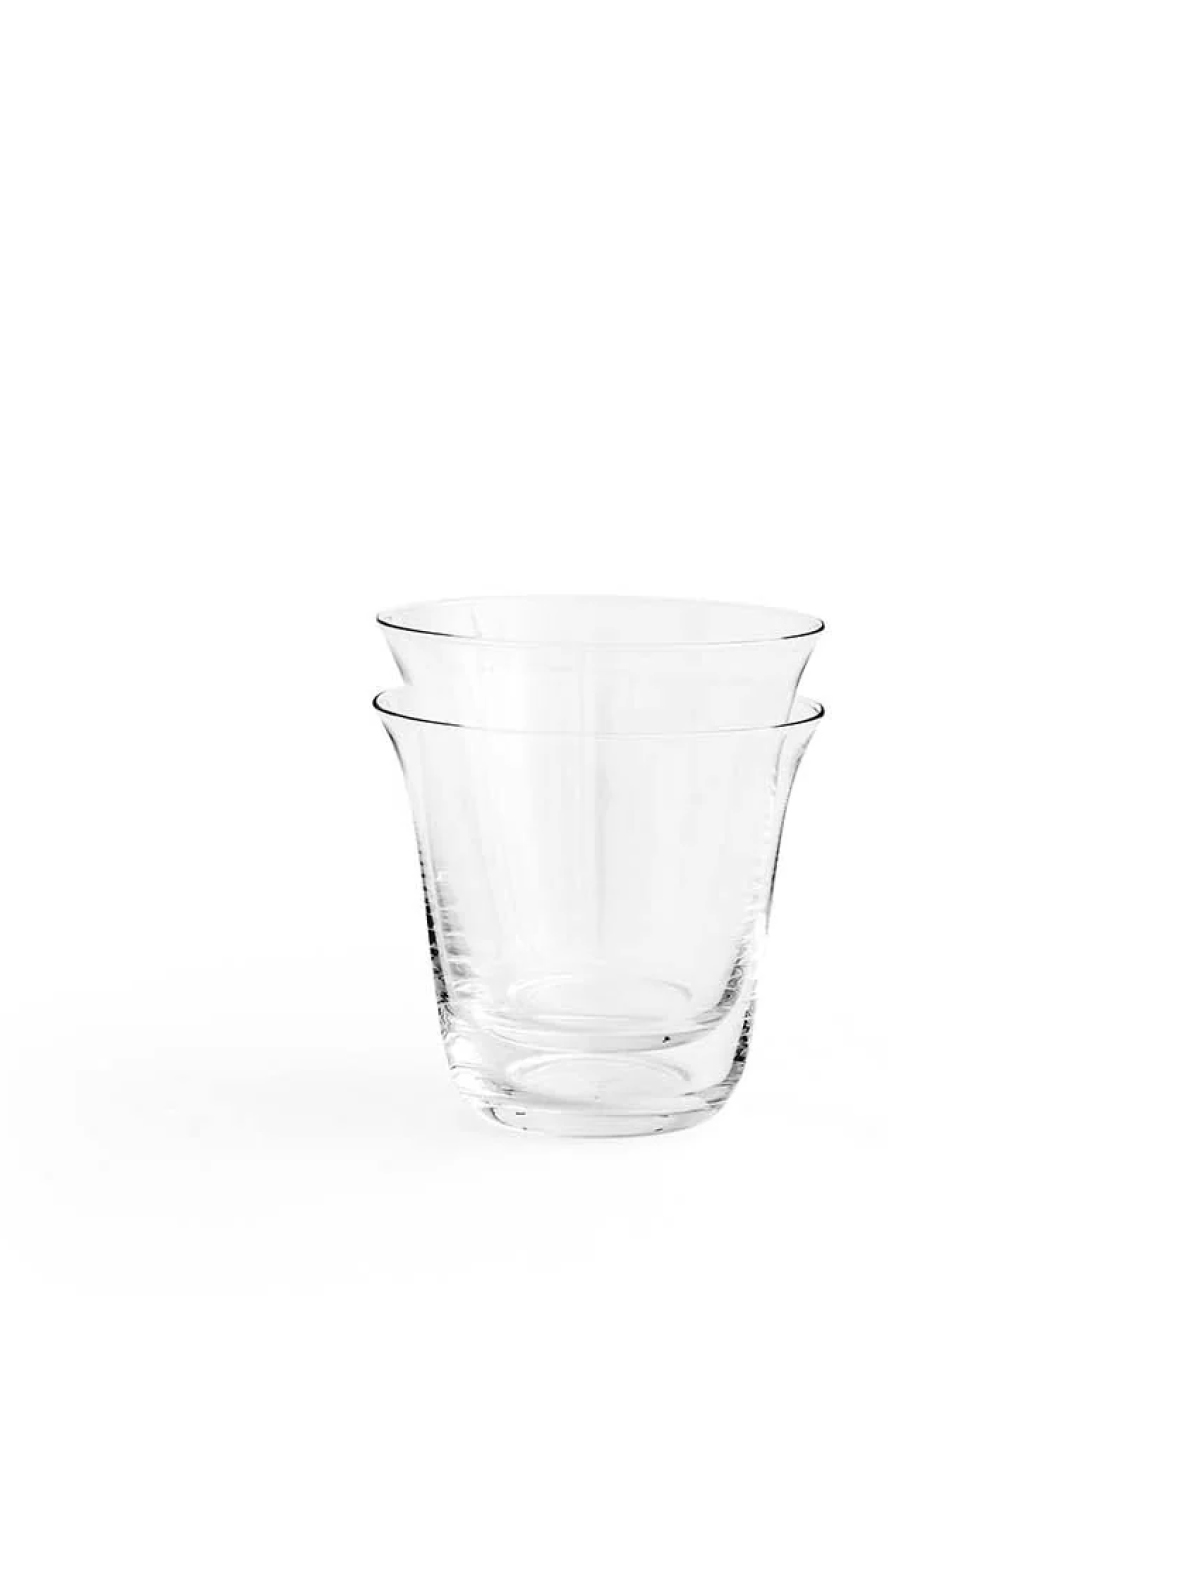 Menu, Strandgade Drinking Glass, Set of 2